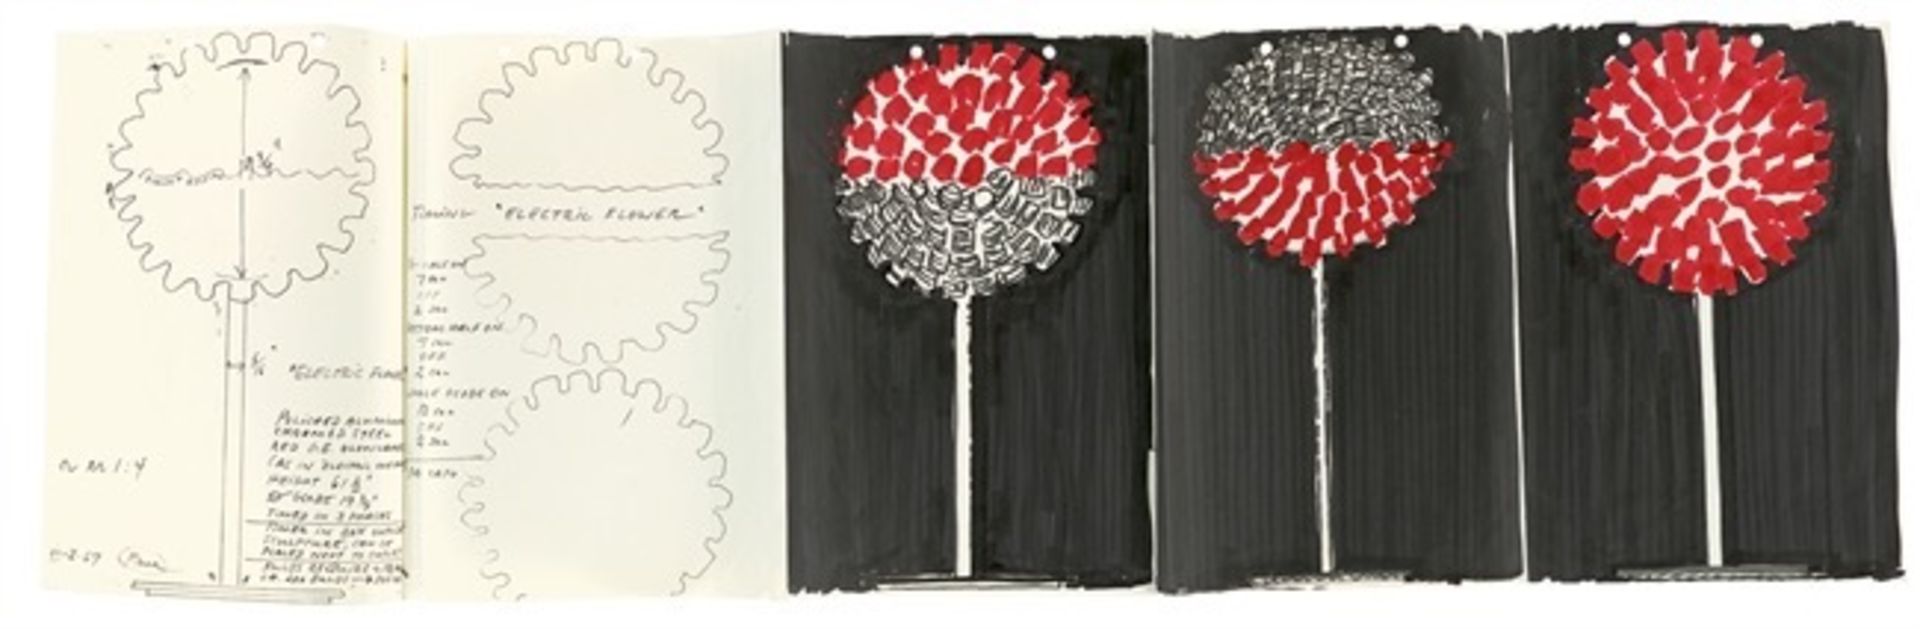 Otto Piene. Entwürfe für die Lichtskulptur: „Electric Flower“. 1967